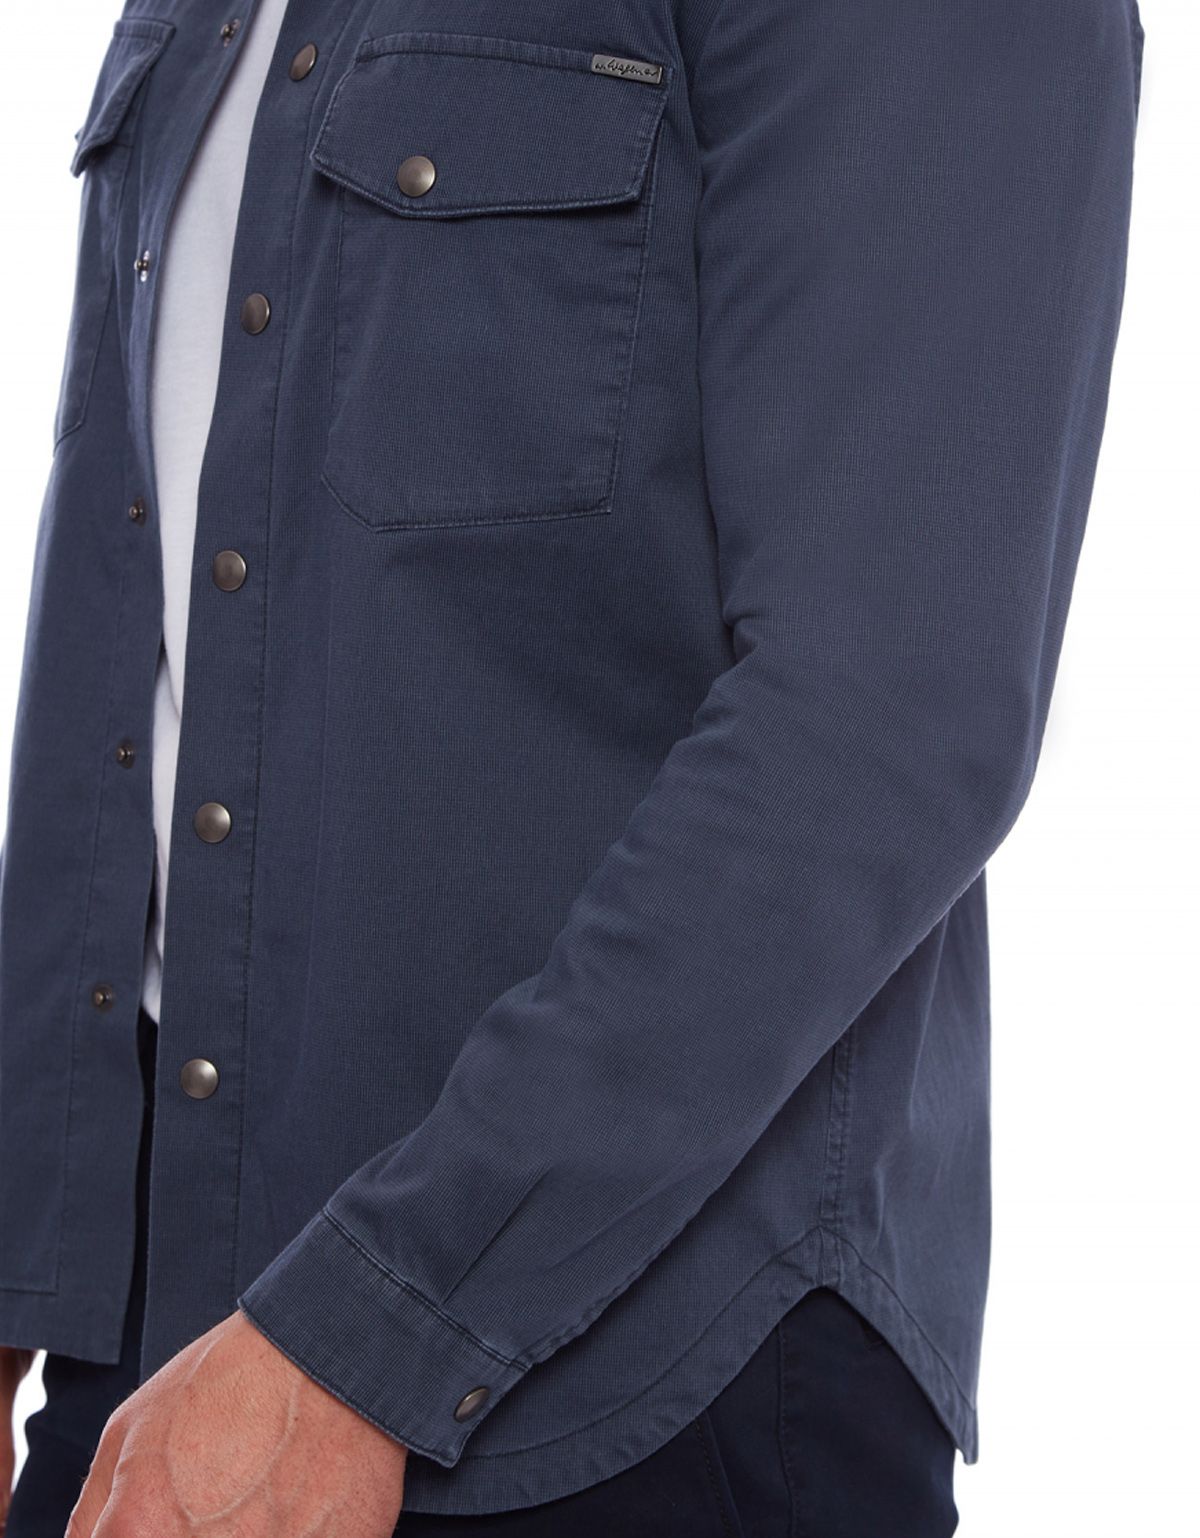 Рубашка мужская оvershirts w.Wegener из микровельвета | купить в интернет-магазине Olymp-Men